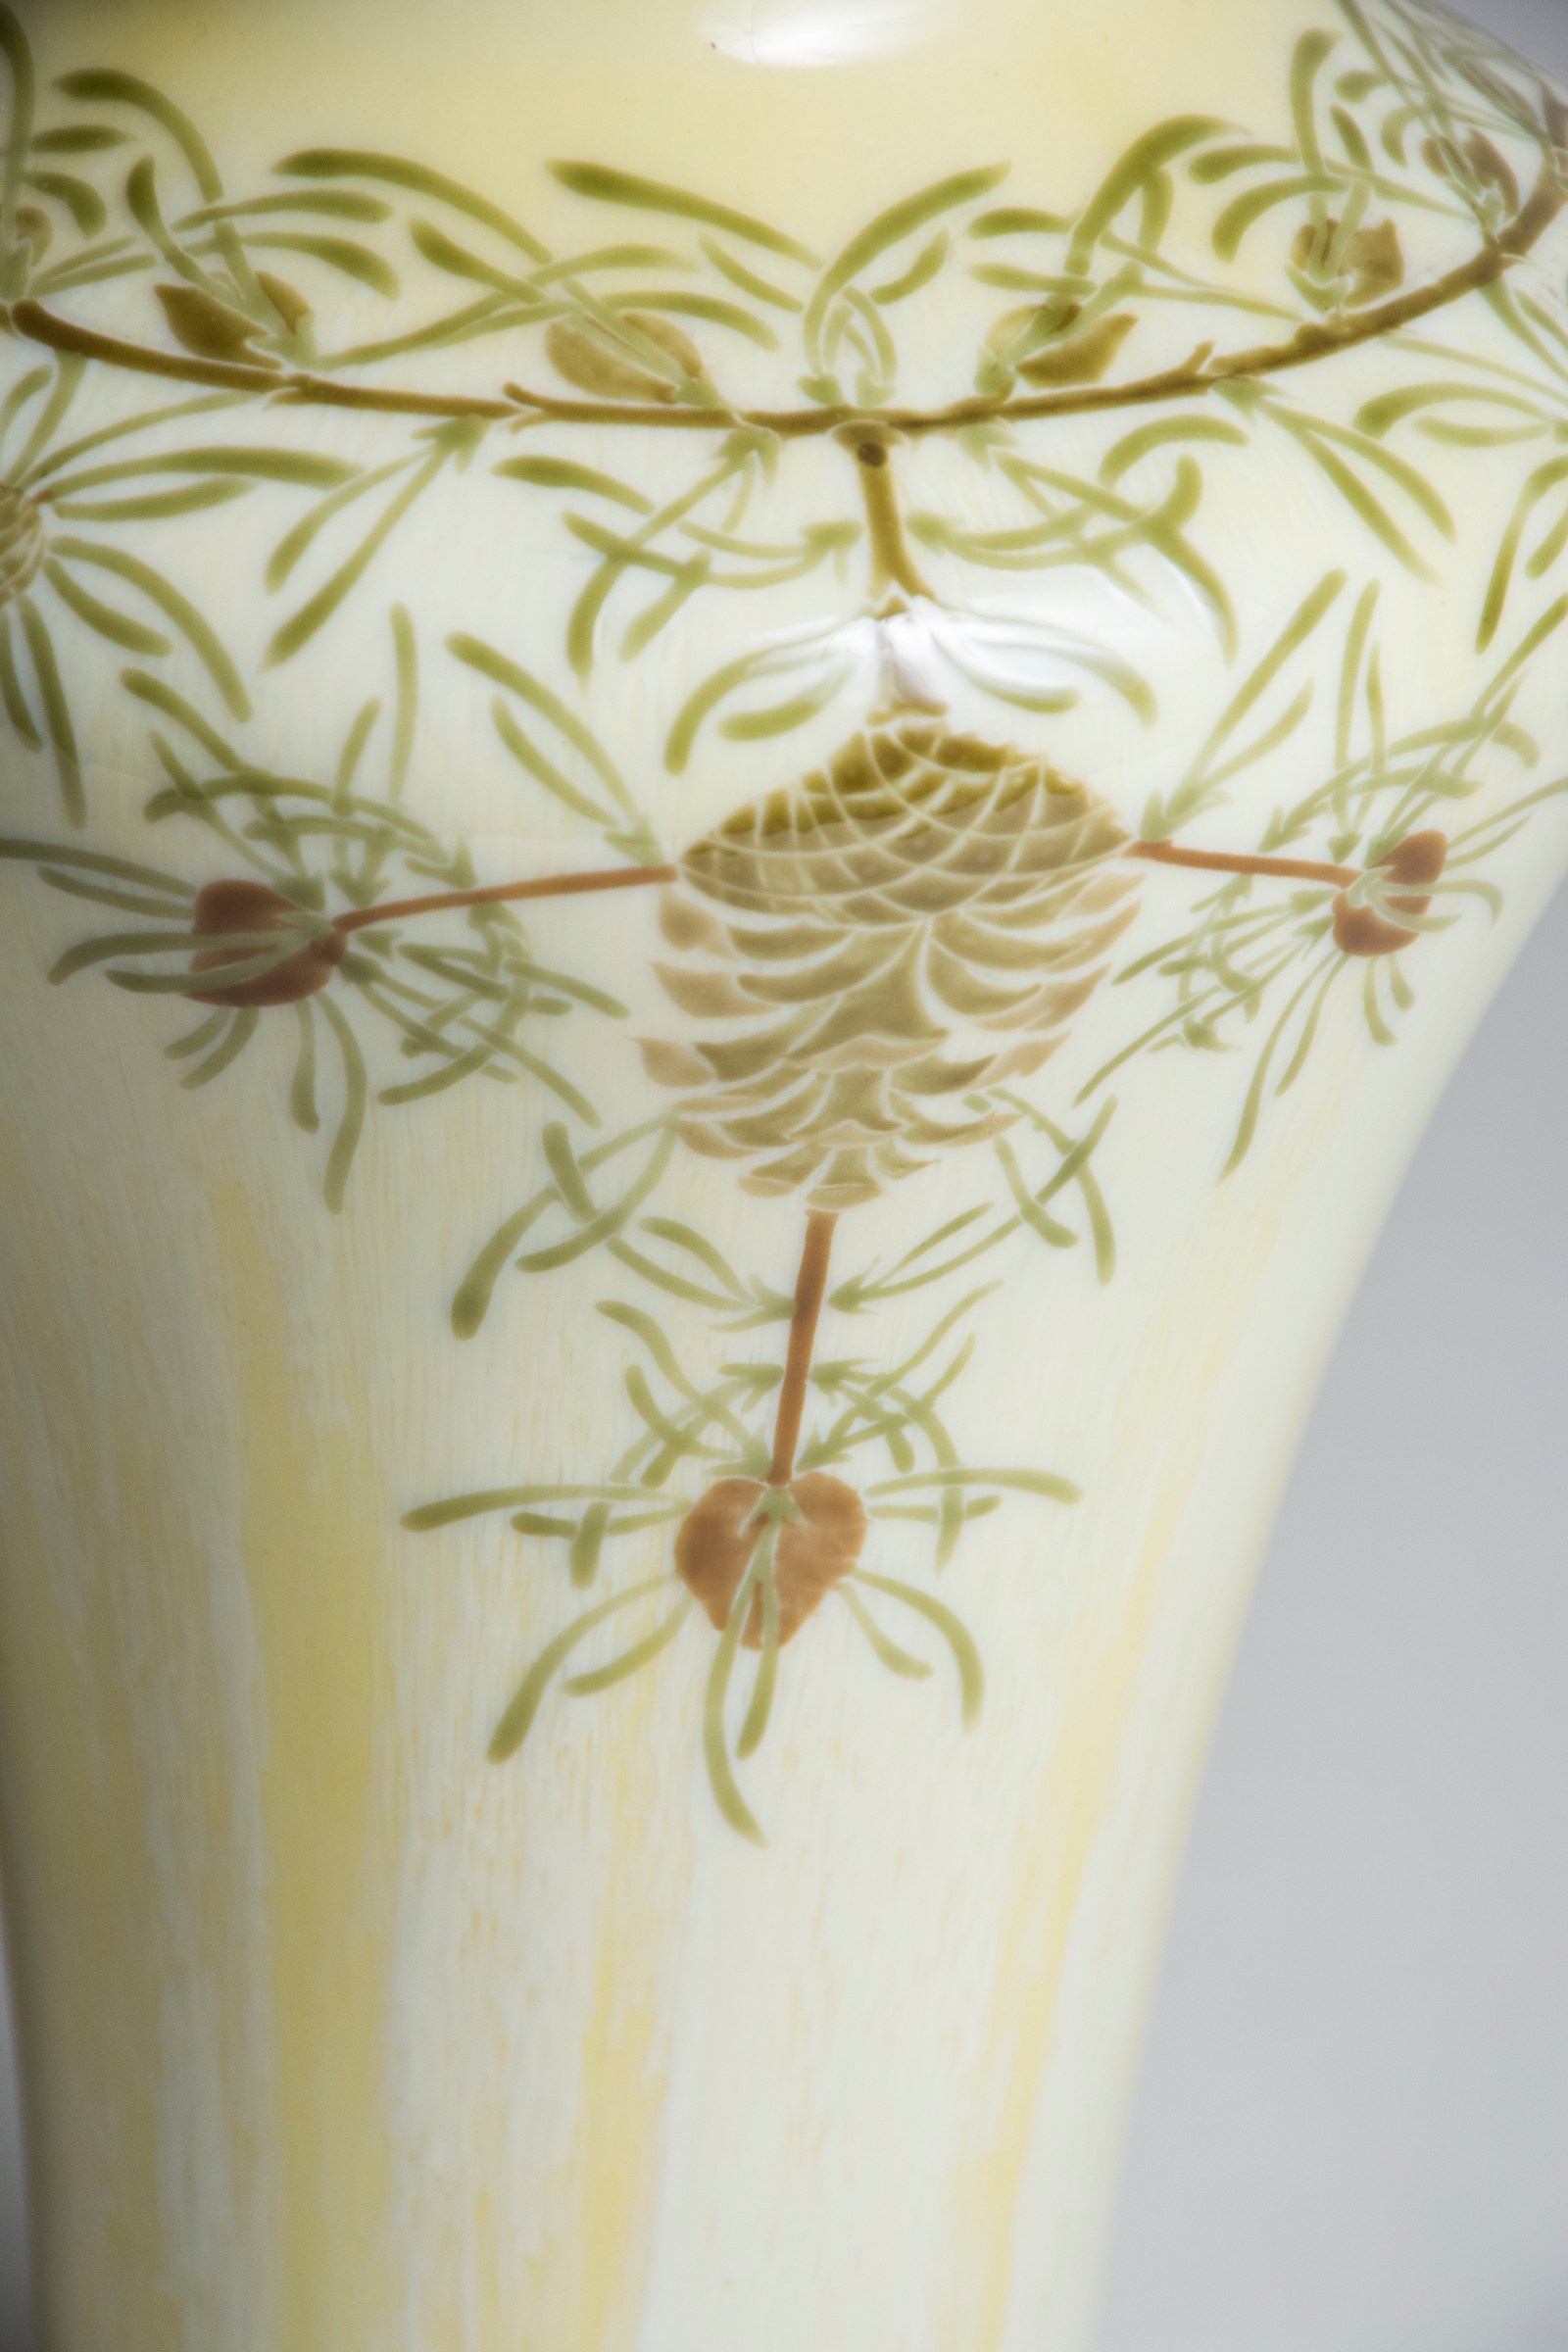 Decorated Porcelain Vase